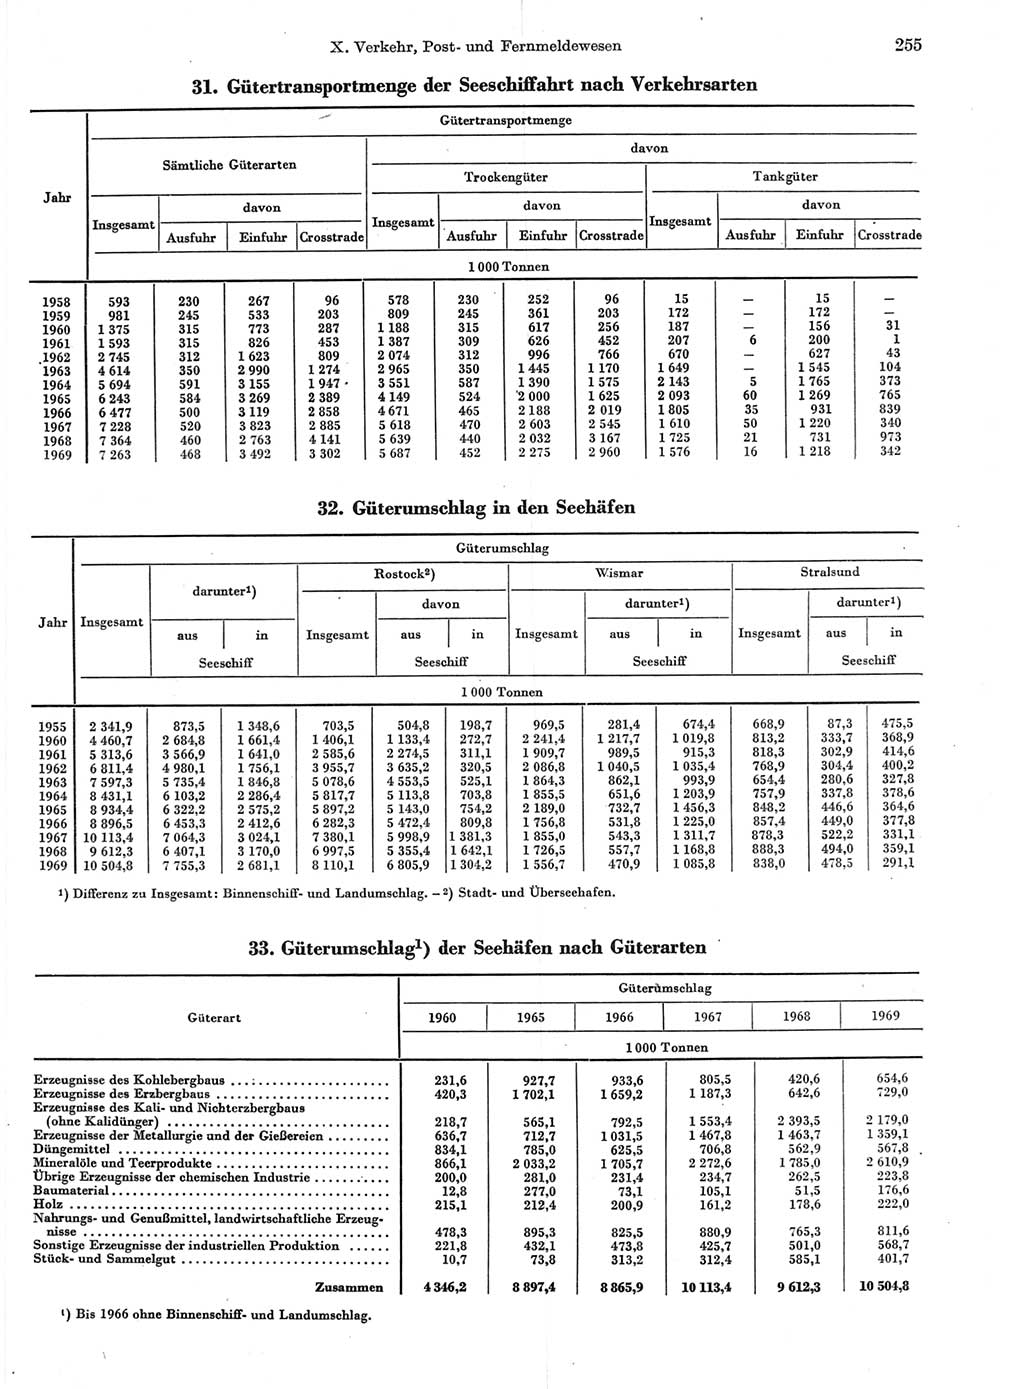 Statistisches Jahrbuch der Deutschen Demokratischen Republik (DDR) 1970, Seite 255 (Stat. Jb. DDR 1970, S. 255)